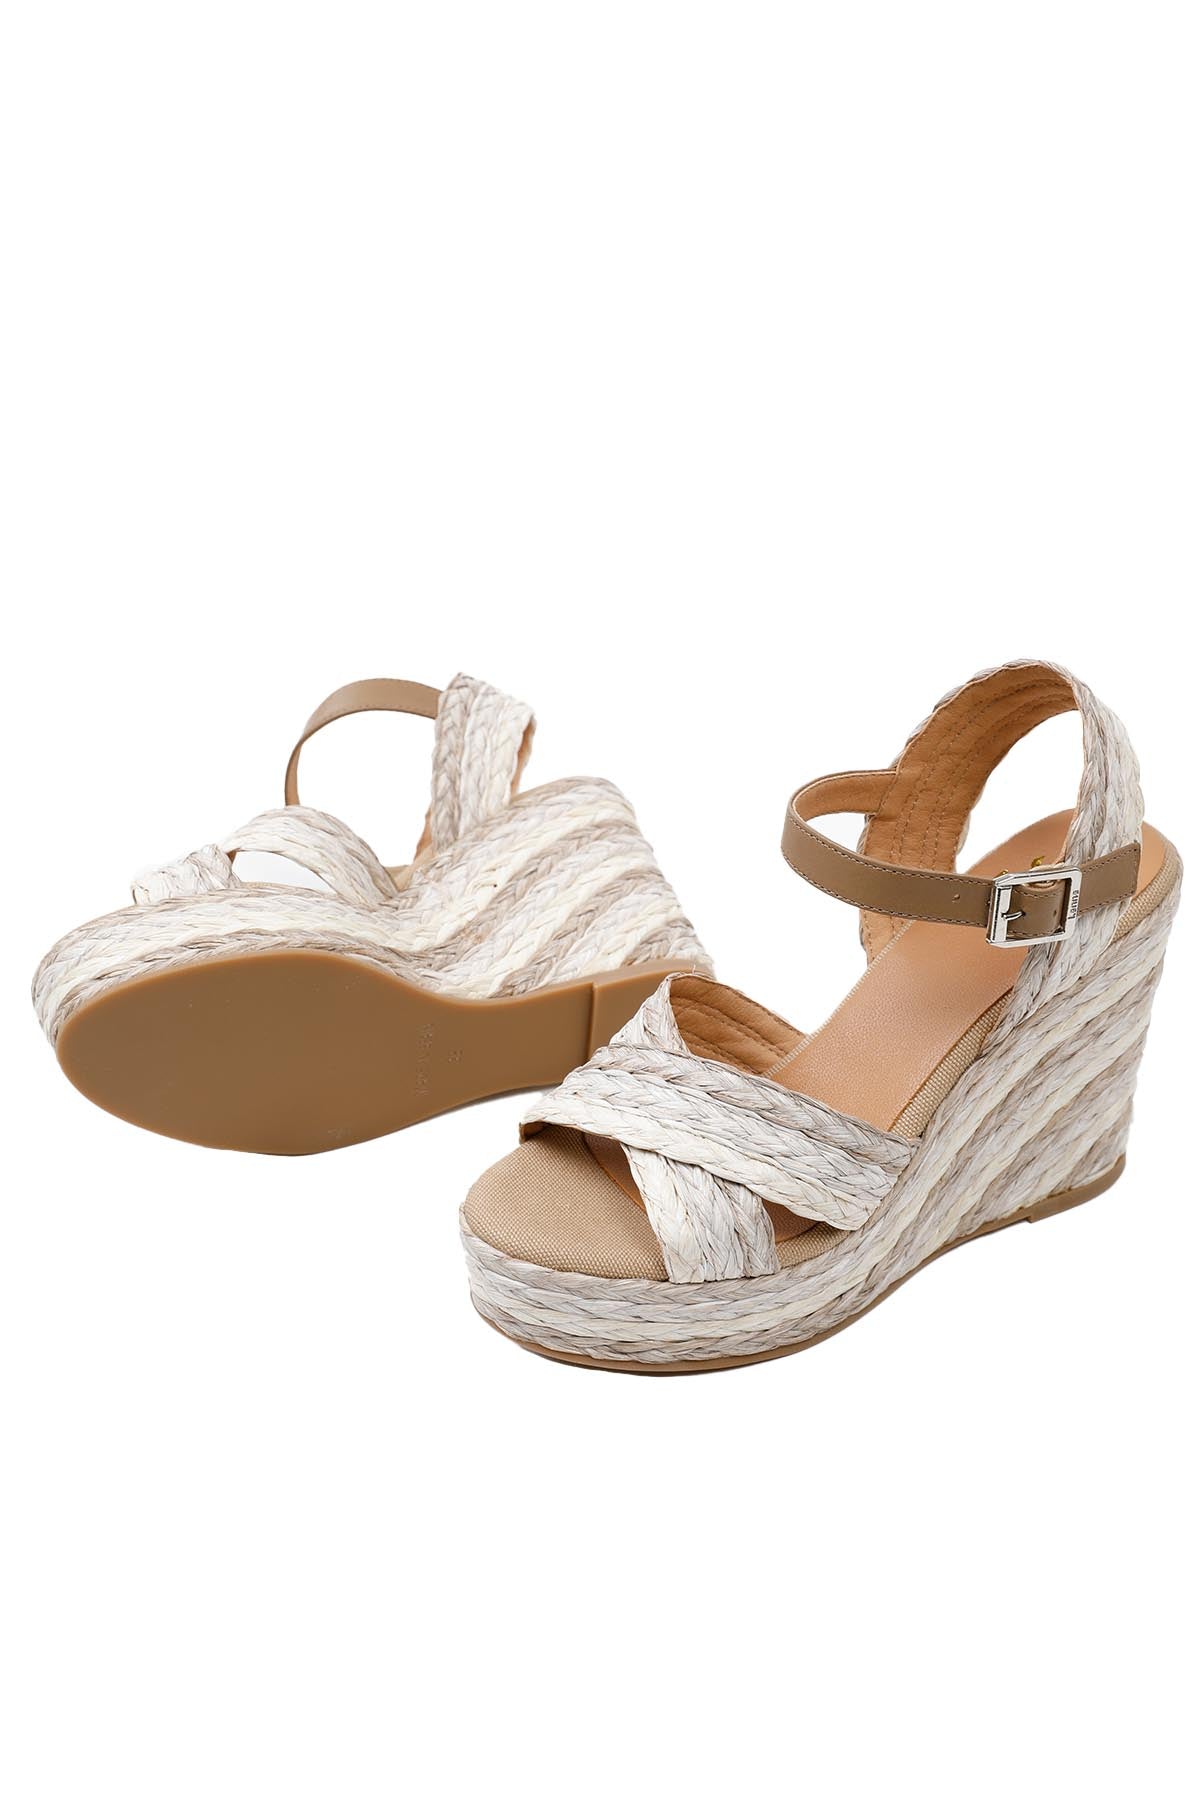 Kanna Hasır Dolgu Topuklu Hasır Örgü Sandalet-Libas Trendy Fashion Store